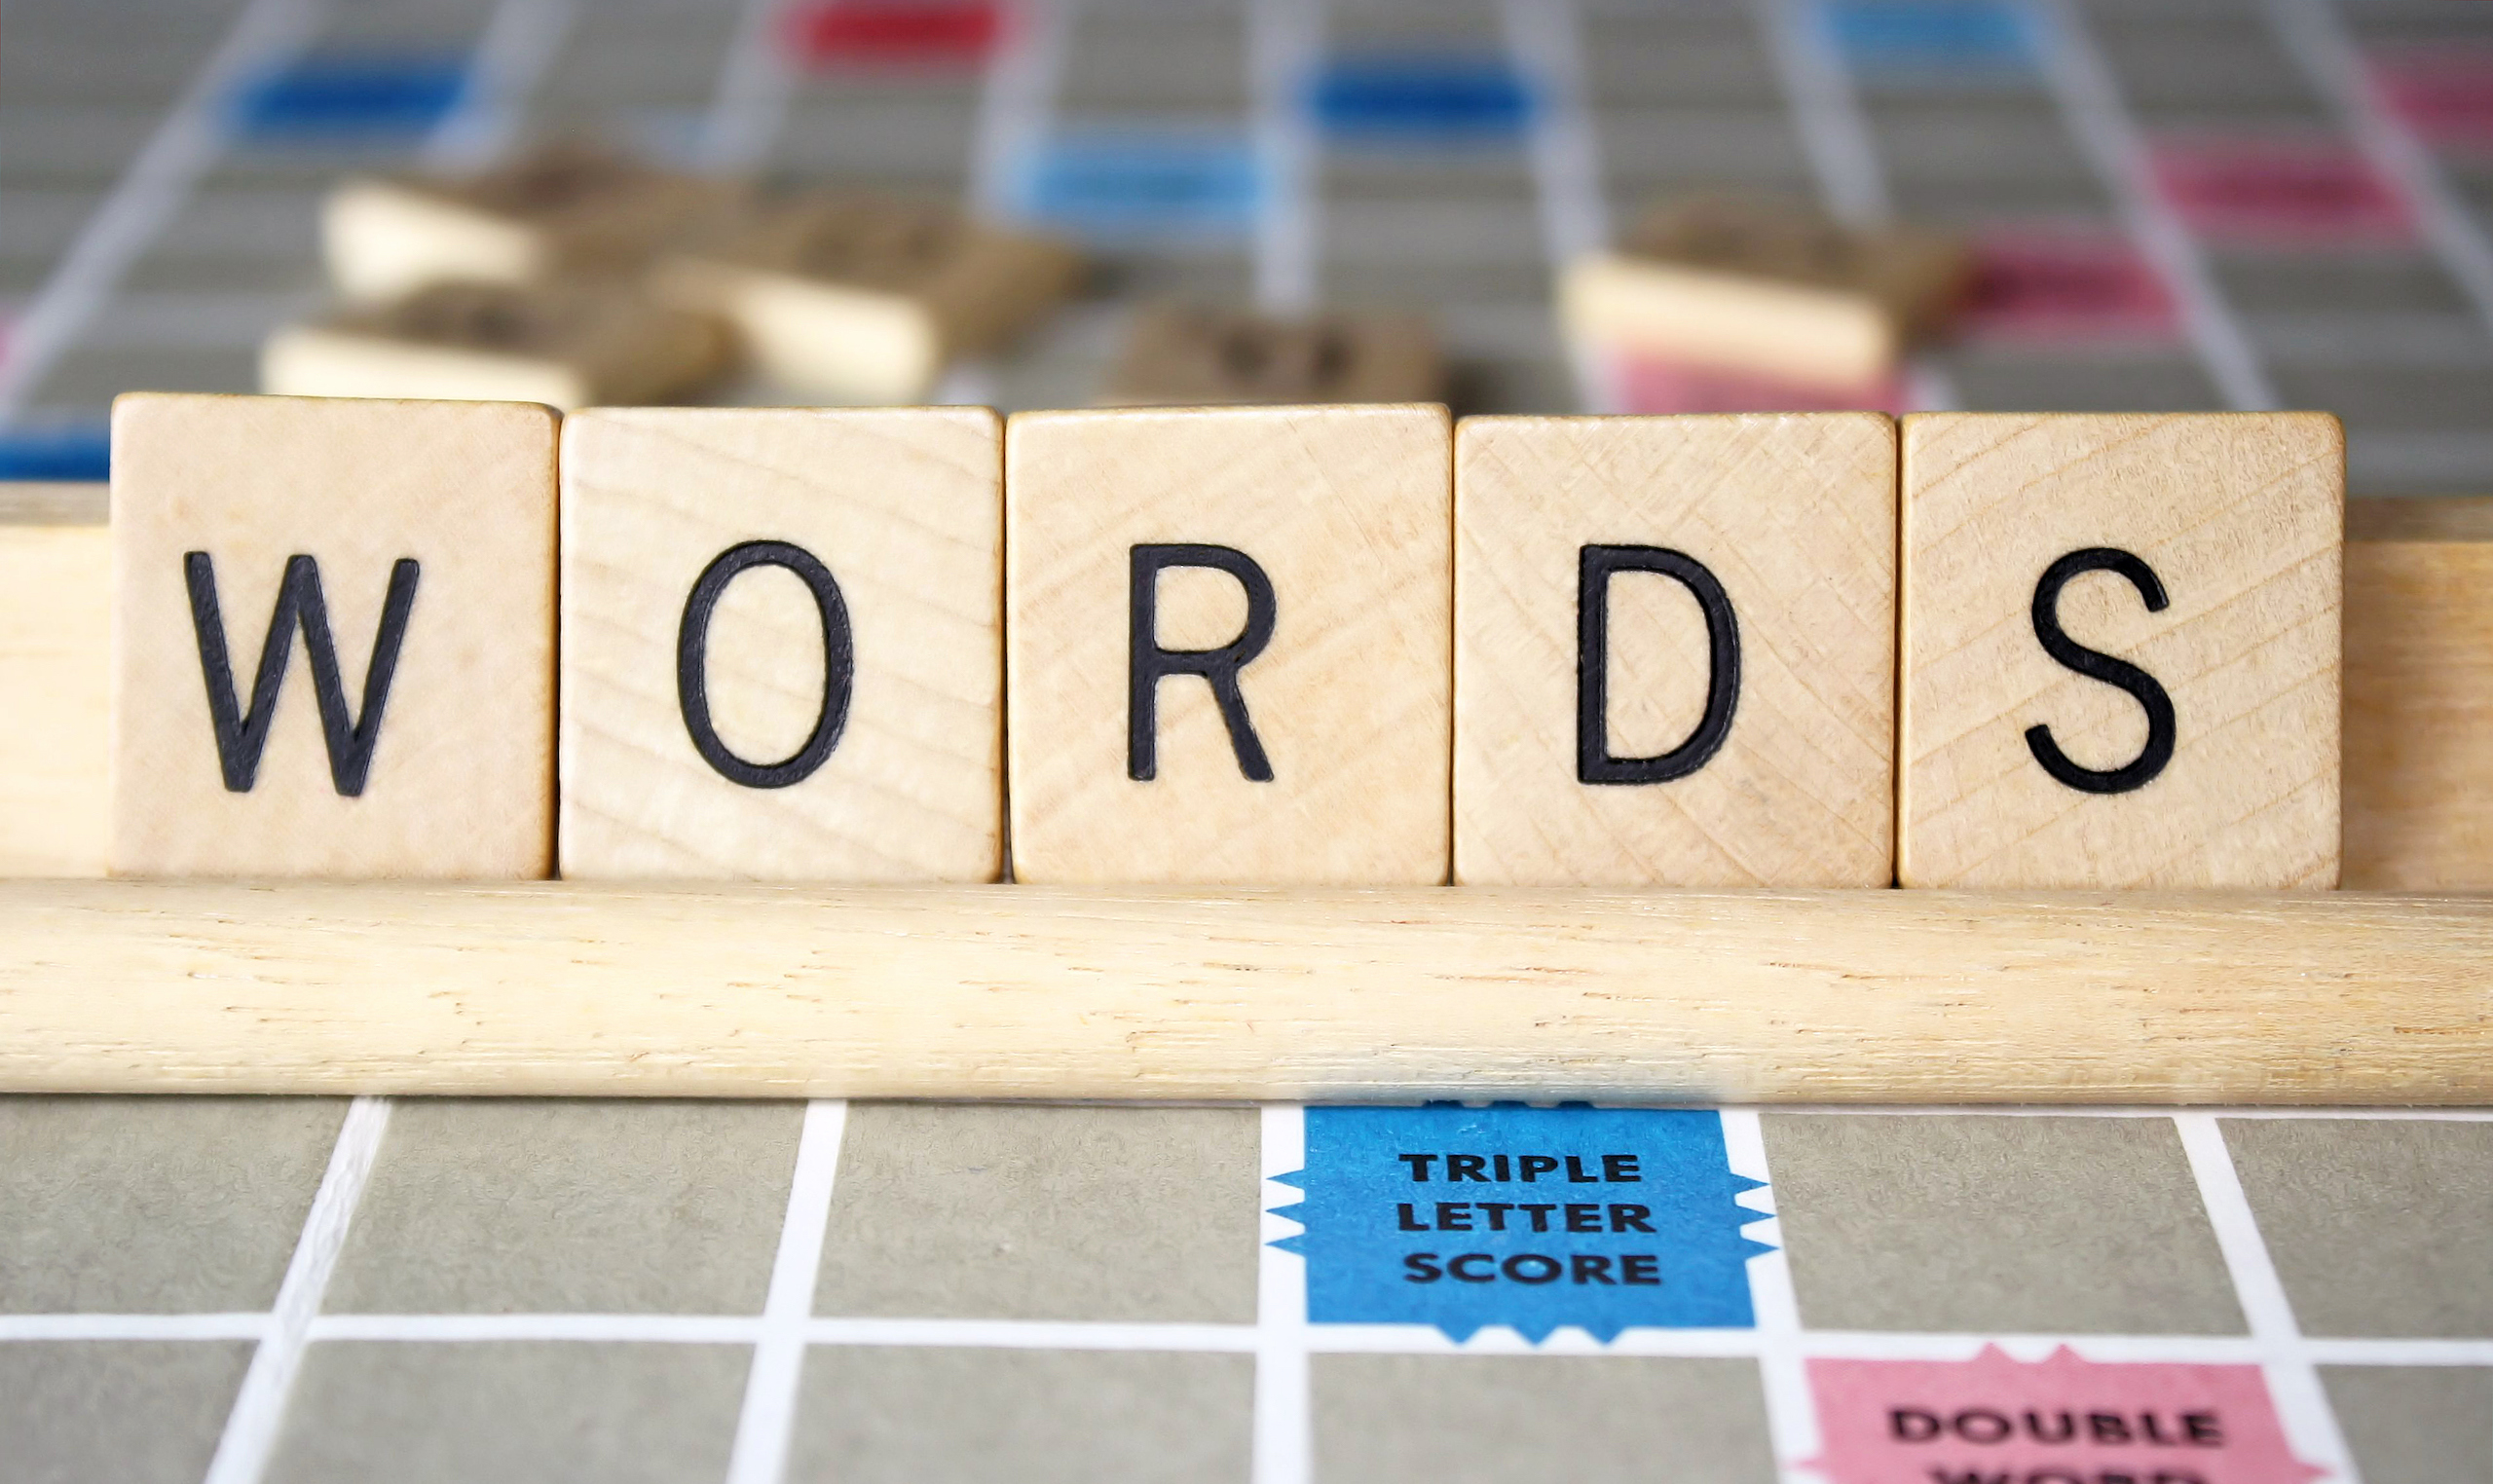 Scrabble words